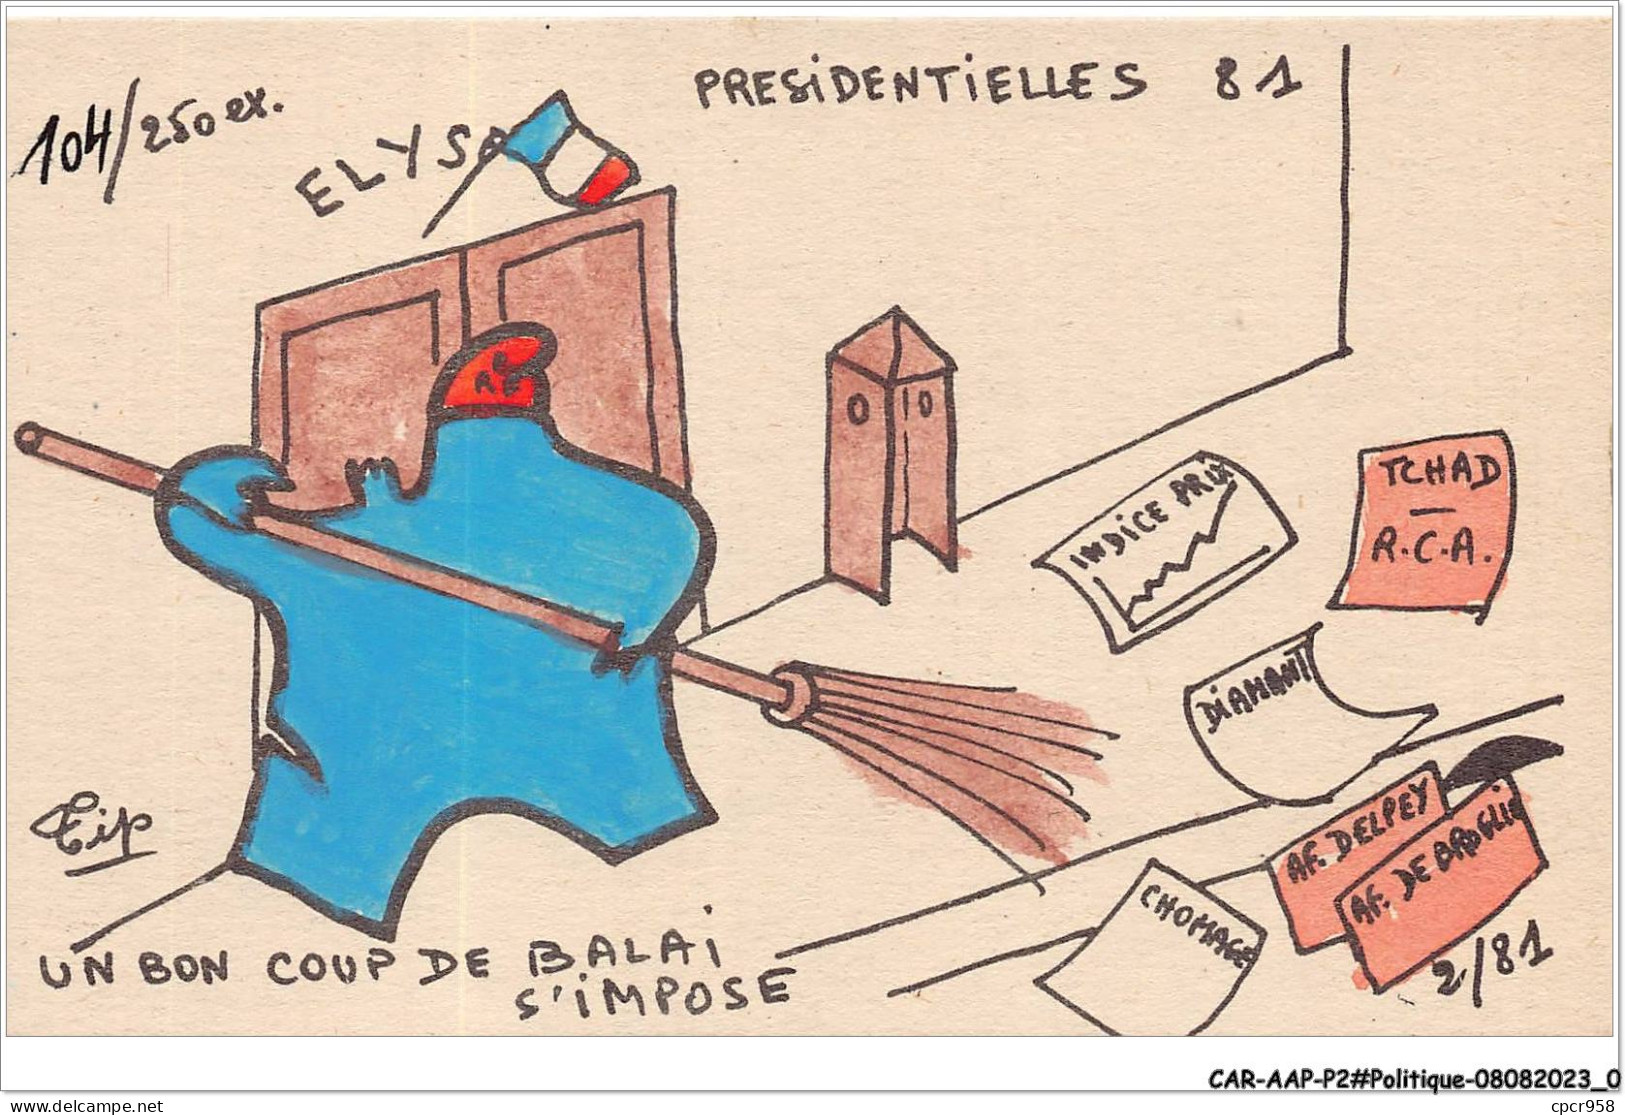 CAR-AAPP2-0083 - POLITIQUE - Presidentielles 81 - Un Bon Coup De Palais S'impose - Politieke Partijen & Verkiezingen